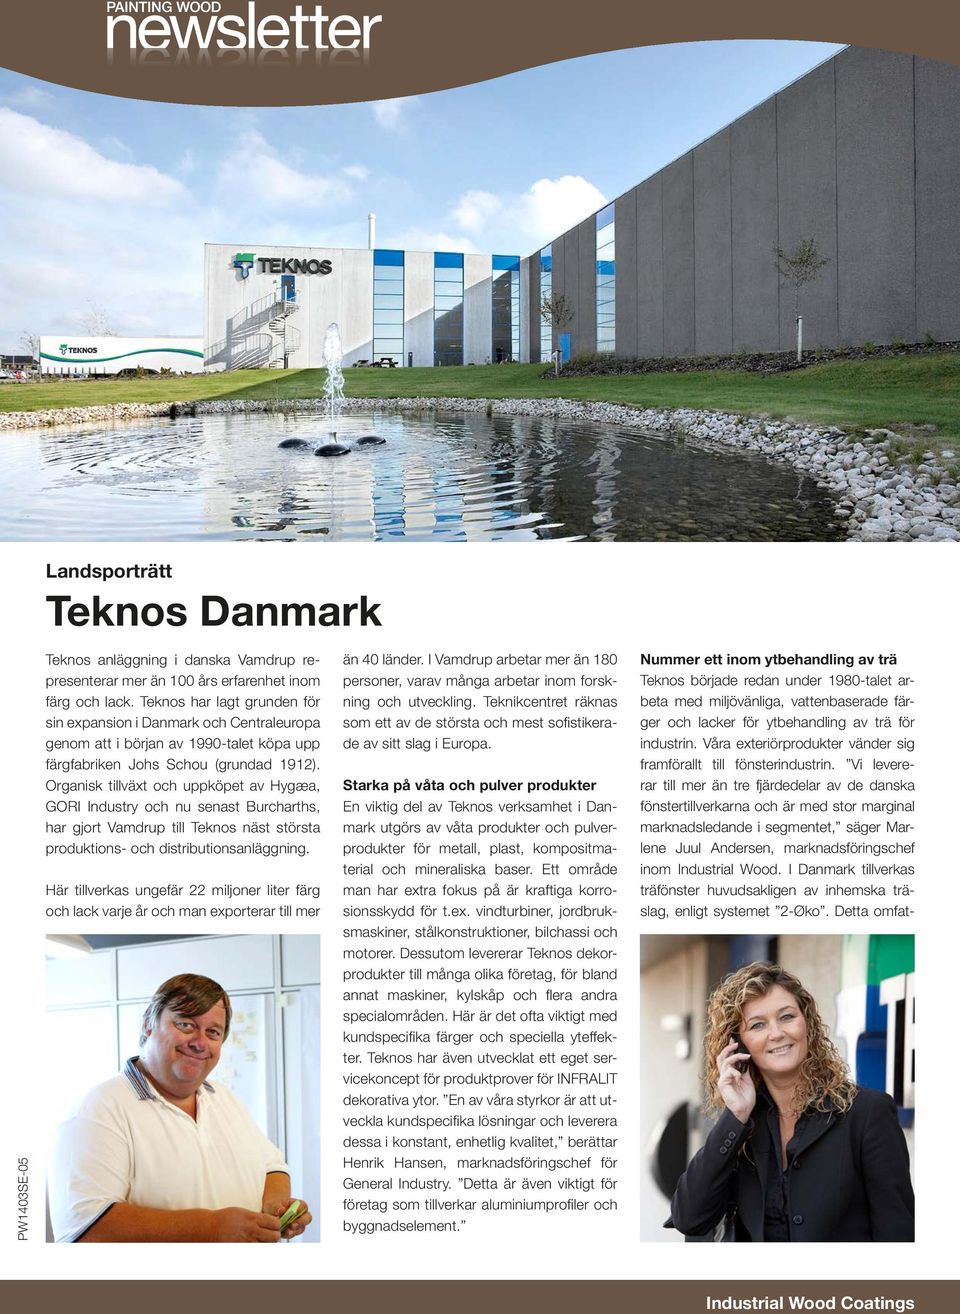 Organisk tillväxt och uppköpet av Hygæa, GORI Industry och nu senast Burcharths, har gjort Vamdrup till Teknos näst största produktions- och distributionsanläggning.